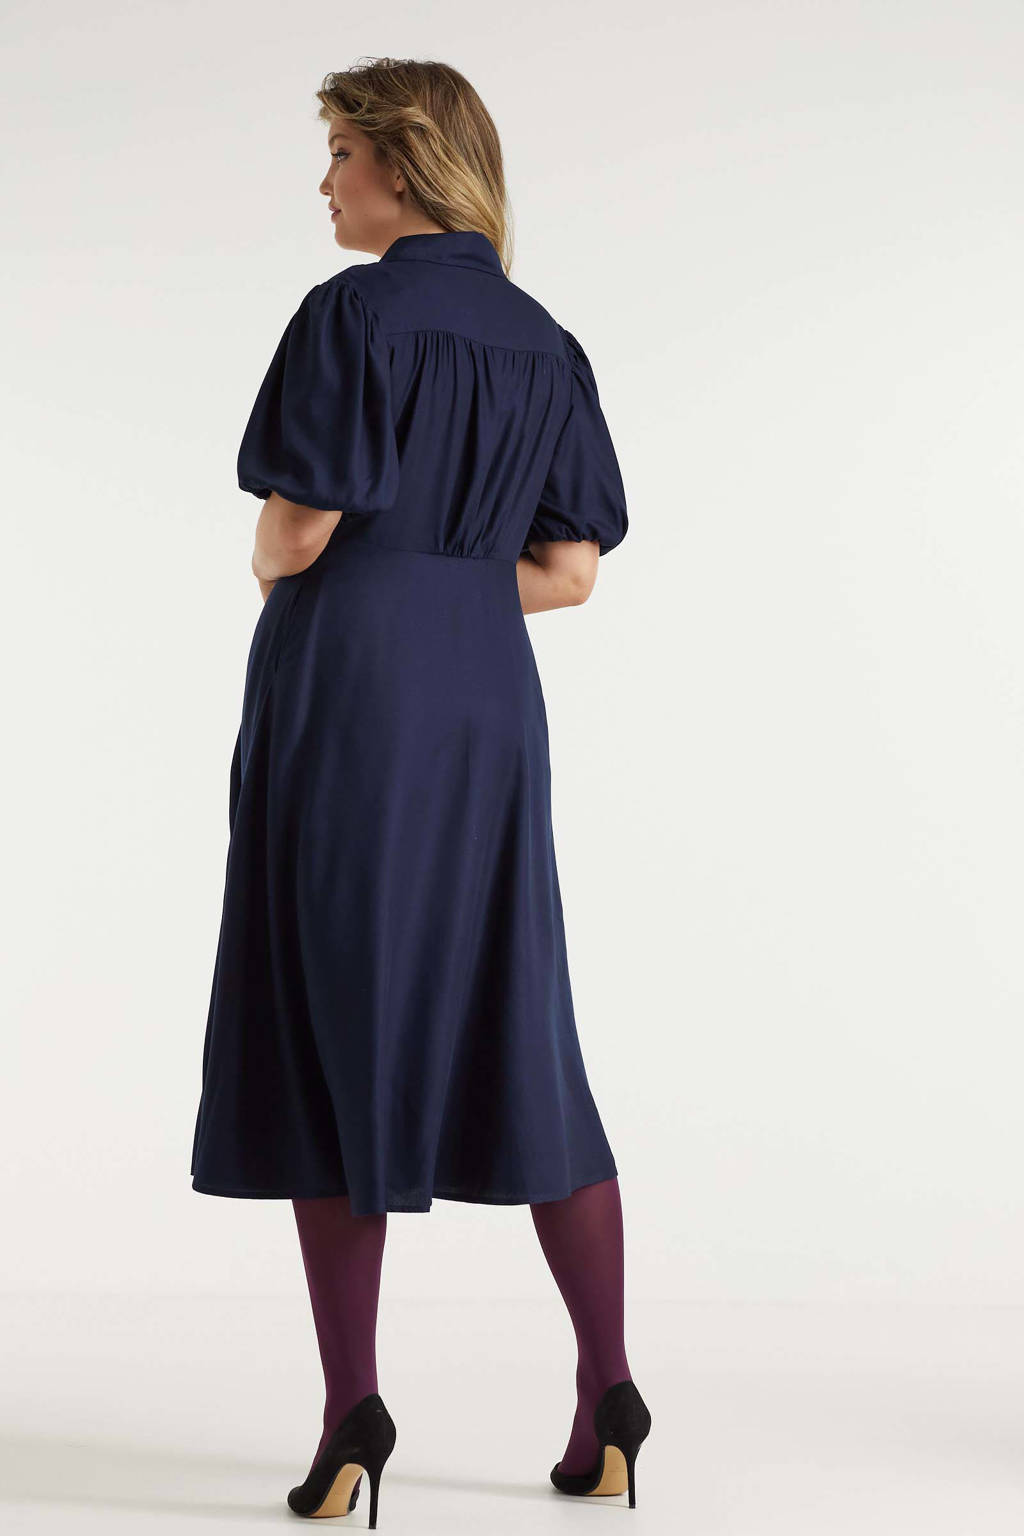 Miljuschka by Wehkamp vintage geïnspireerde jurk met knopen donkerblauw |  wehkamp